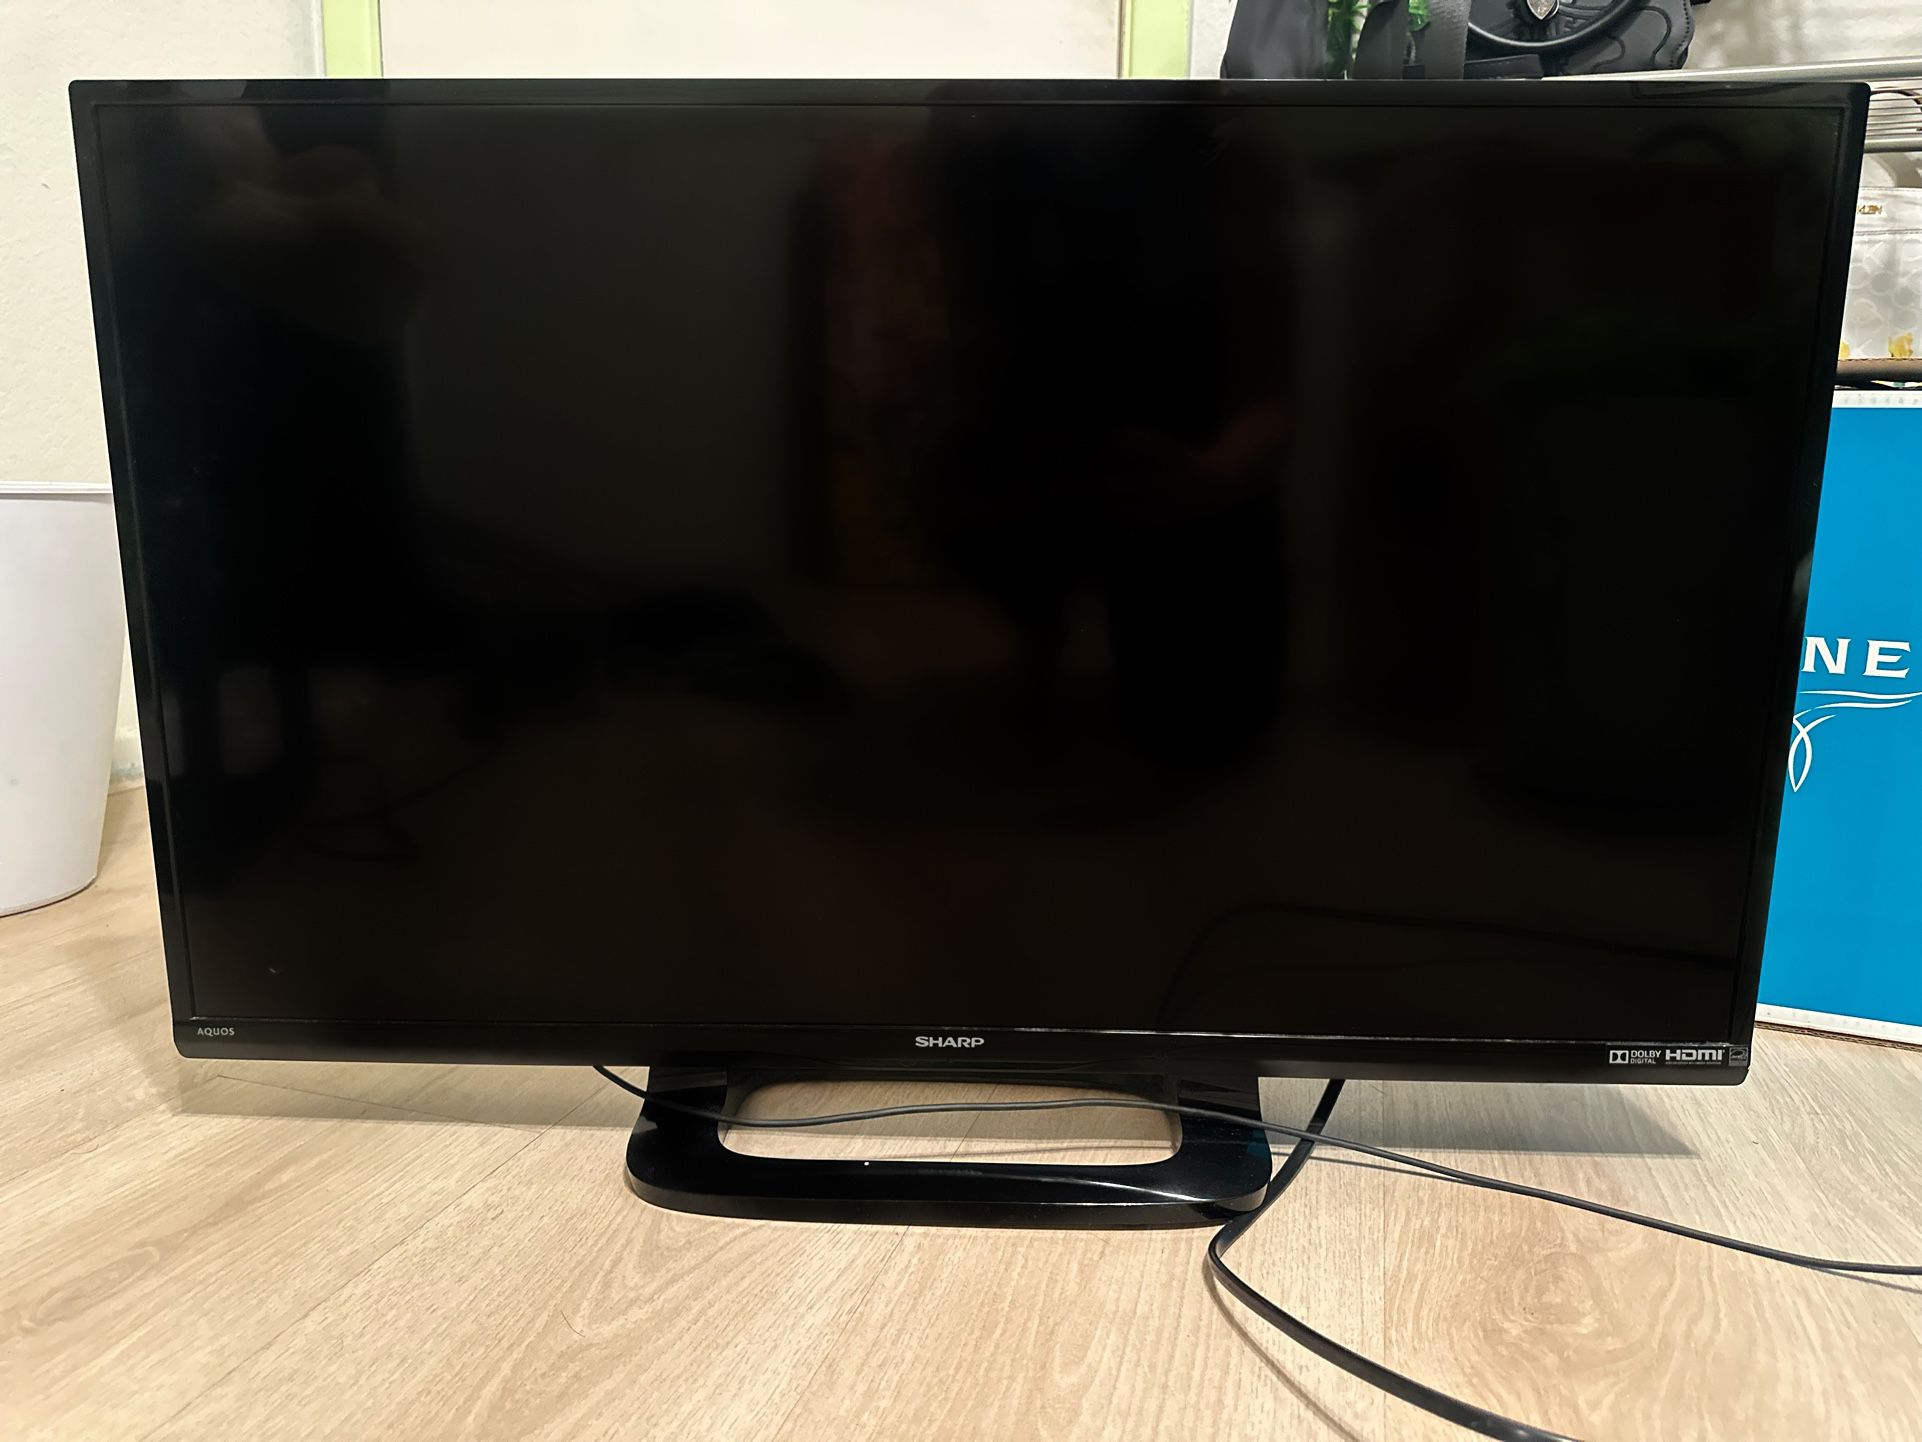 Flatscreen Tv 32” WITH FIRESTICK